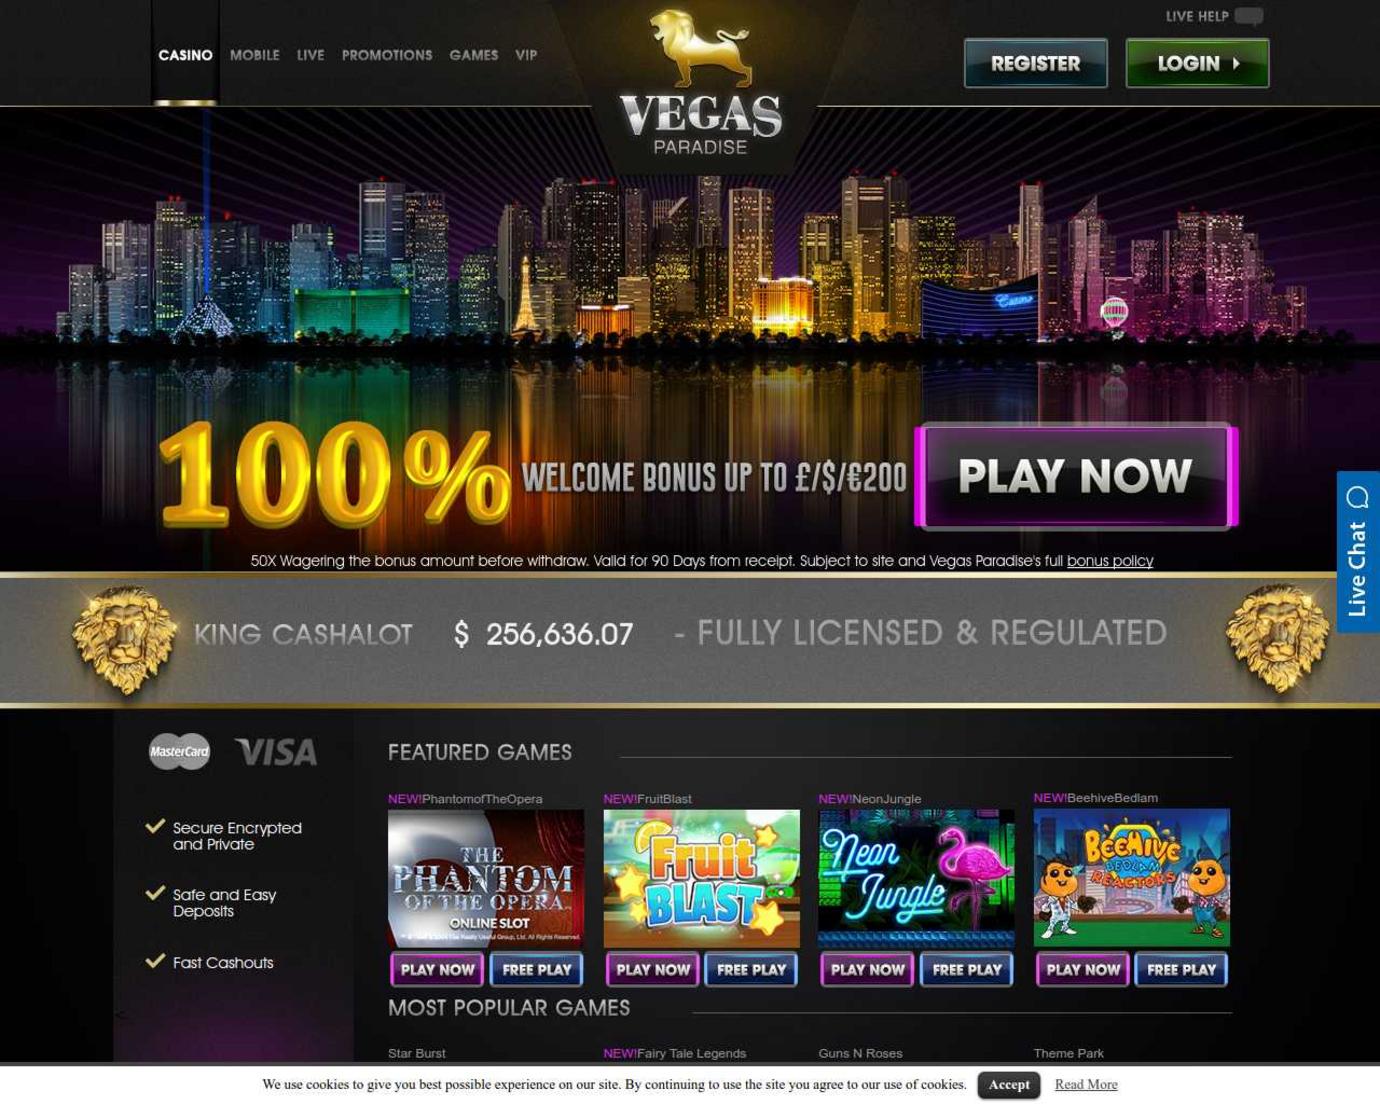 Online casino reviews powered by ipb игровые автоматы джойказино играть бесплатно на joycasino com